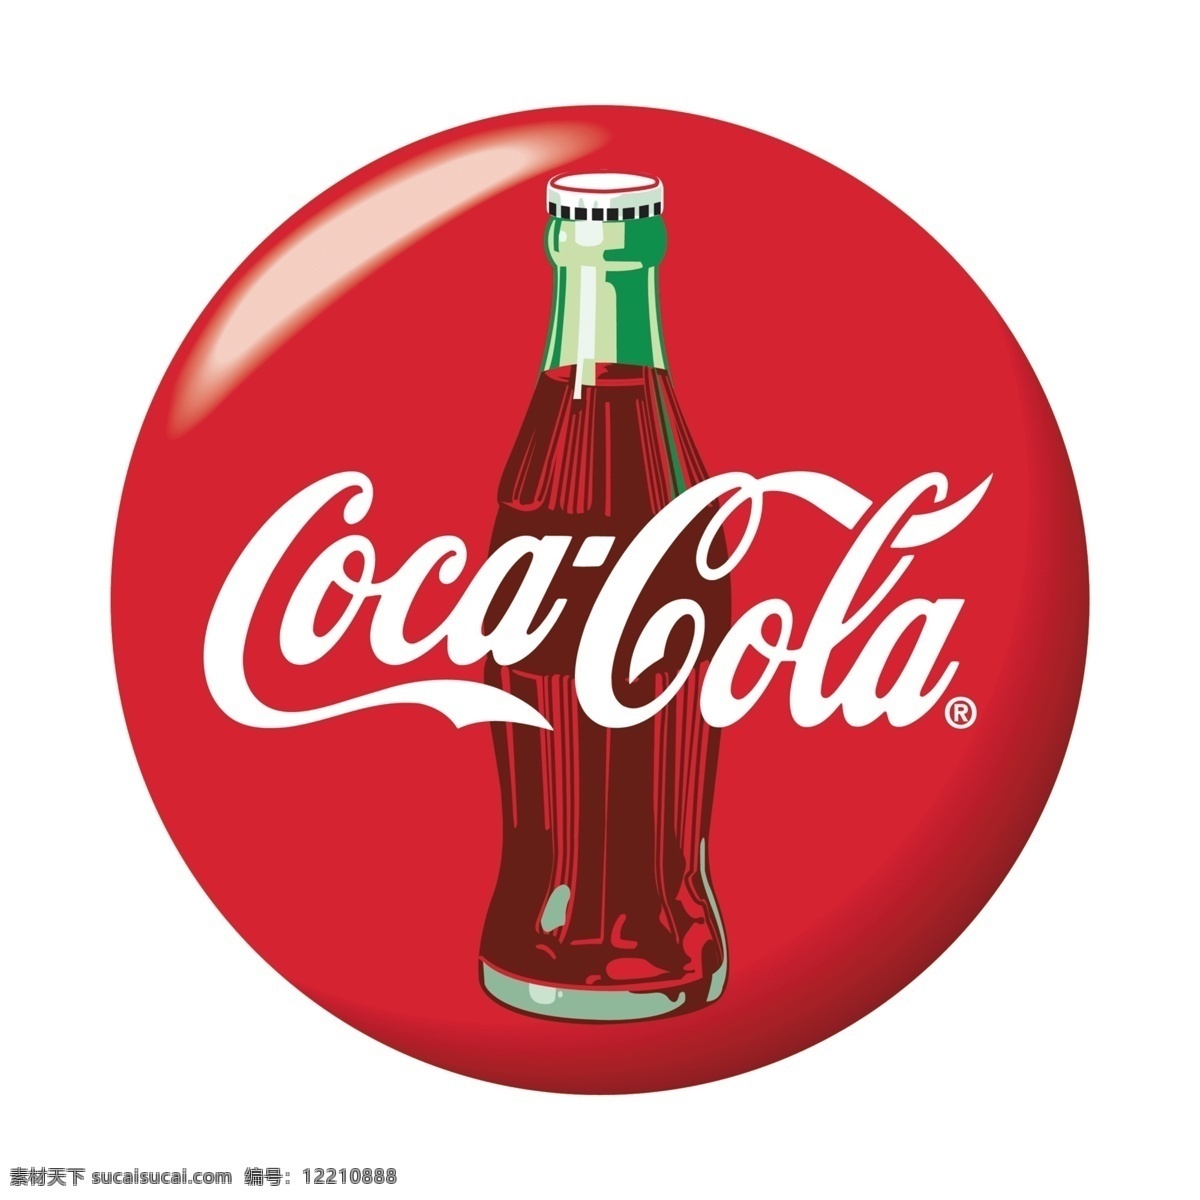 可口可乐 经典 广告 饮料 汽水 可乐 可口 啤酒logo